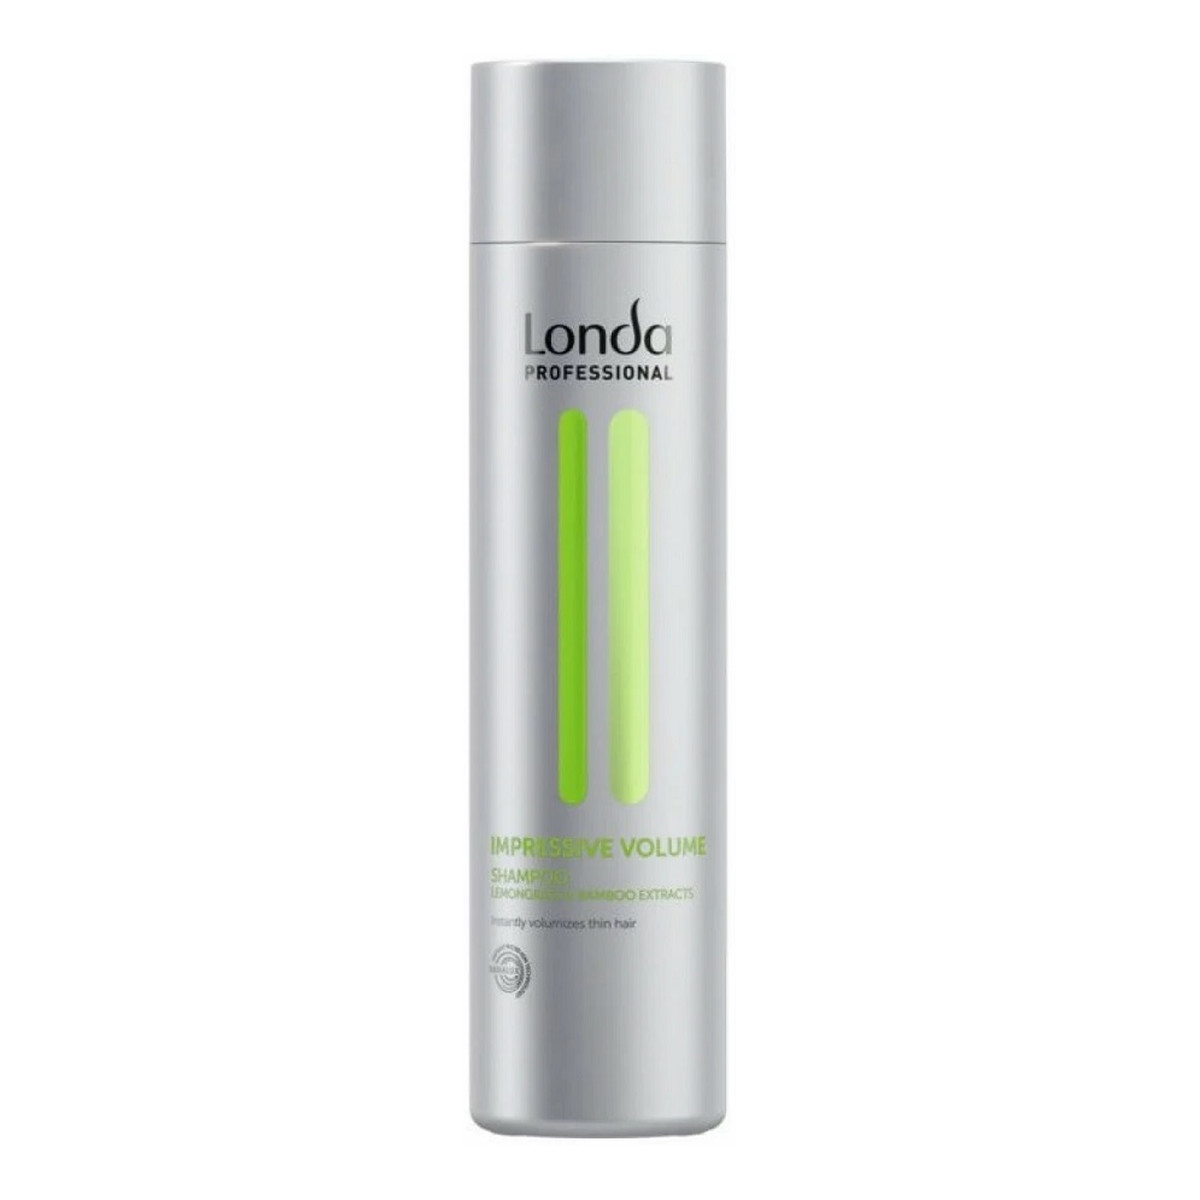 Londa Professional Professional Impressive Volume Shampoo szampon zwiększający objętość włosów 250ml